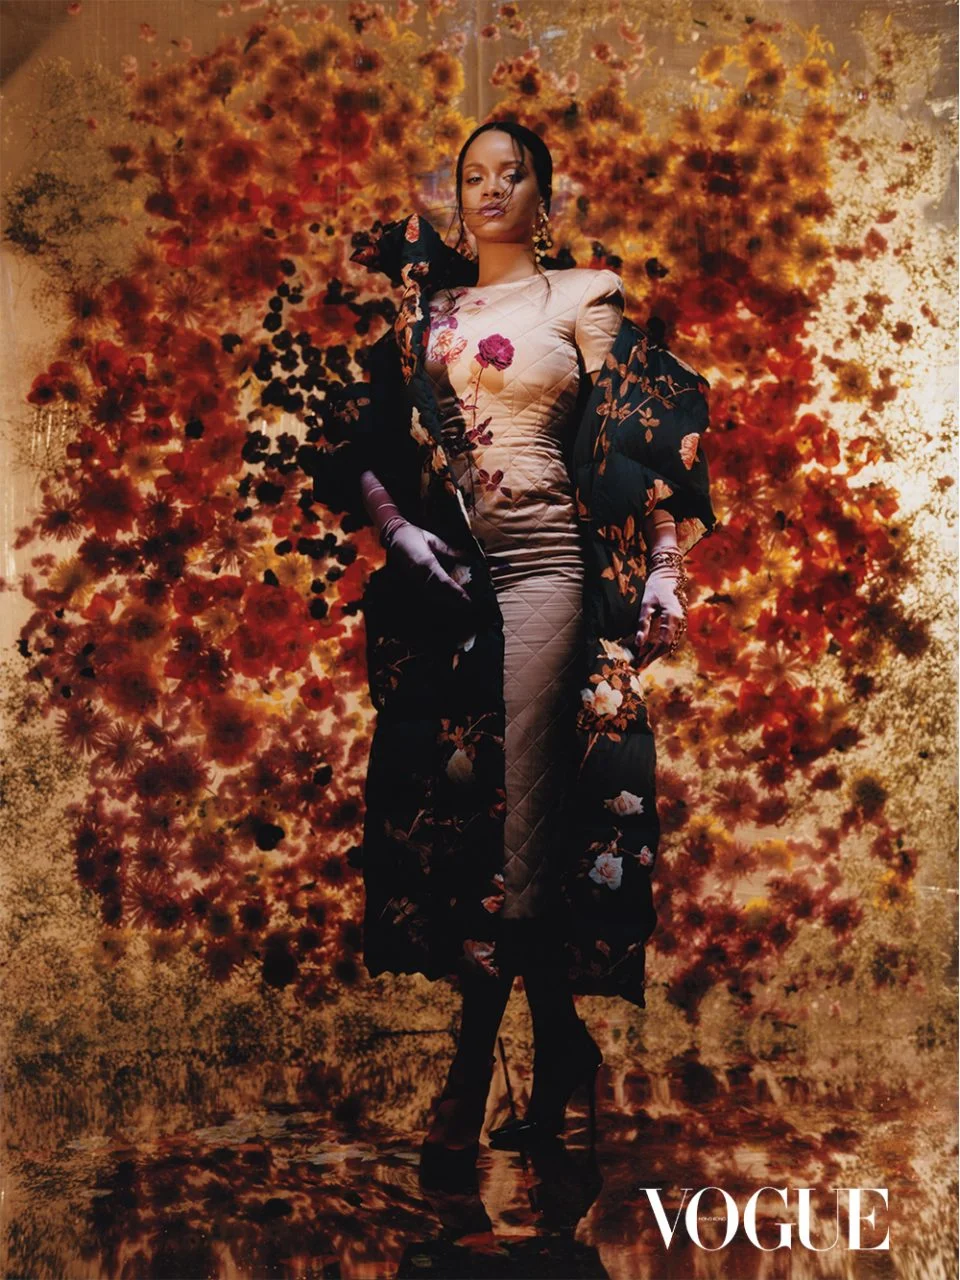 Рианна в очень женственных образах украсила обложку Vogue - фото 447894